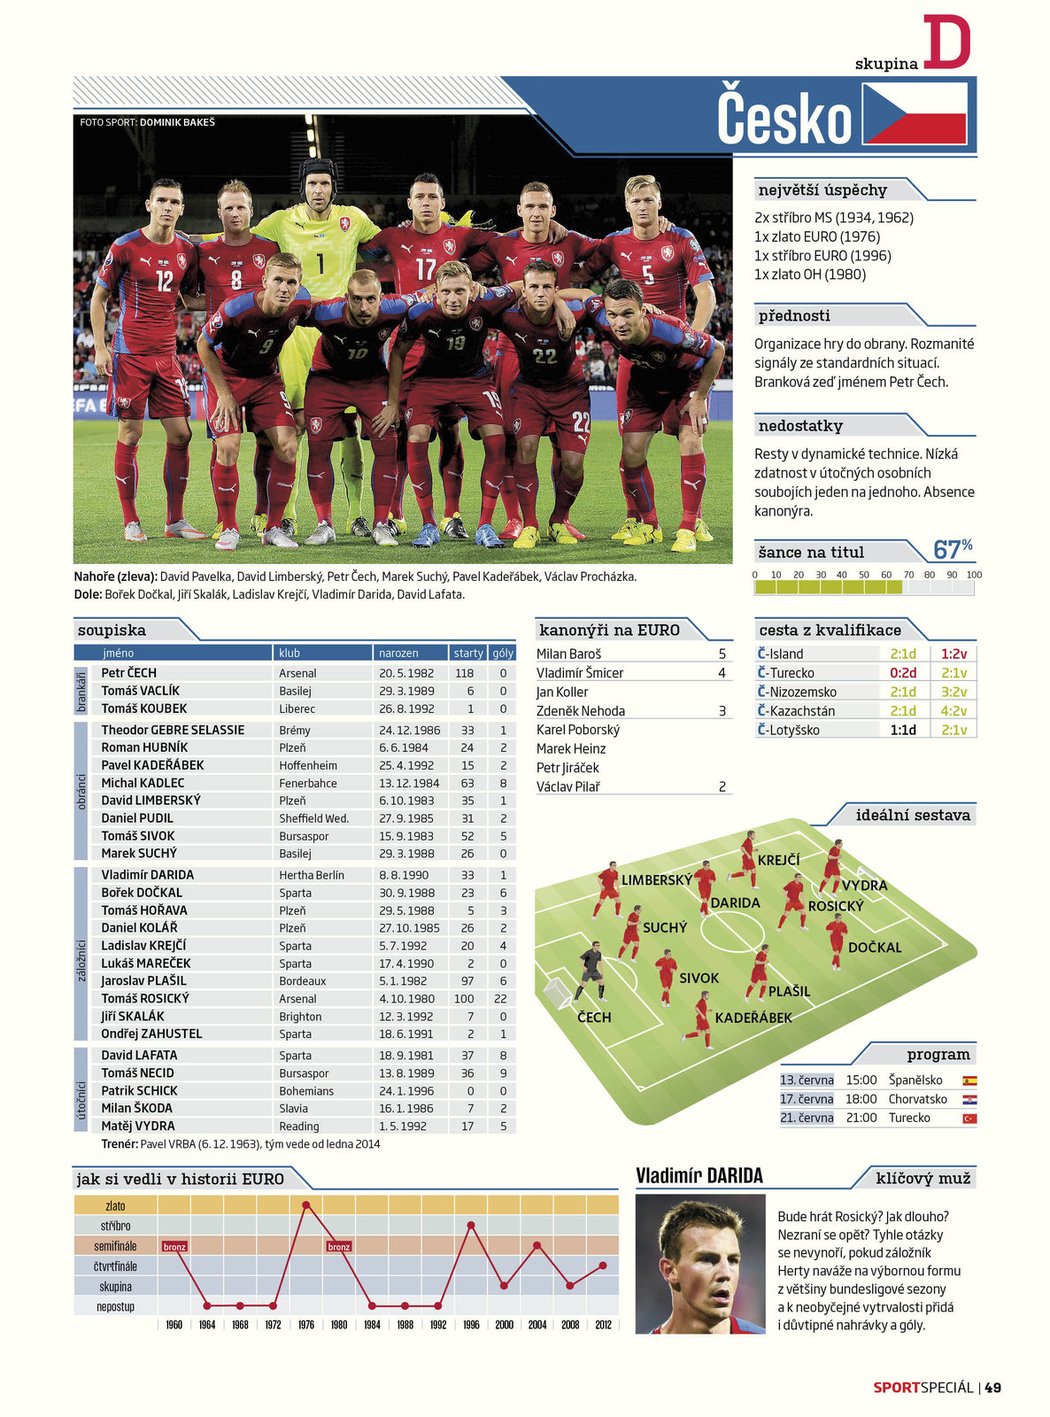 Speciální Magazín k EURO 2016: soupisky